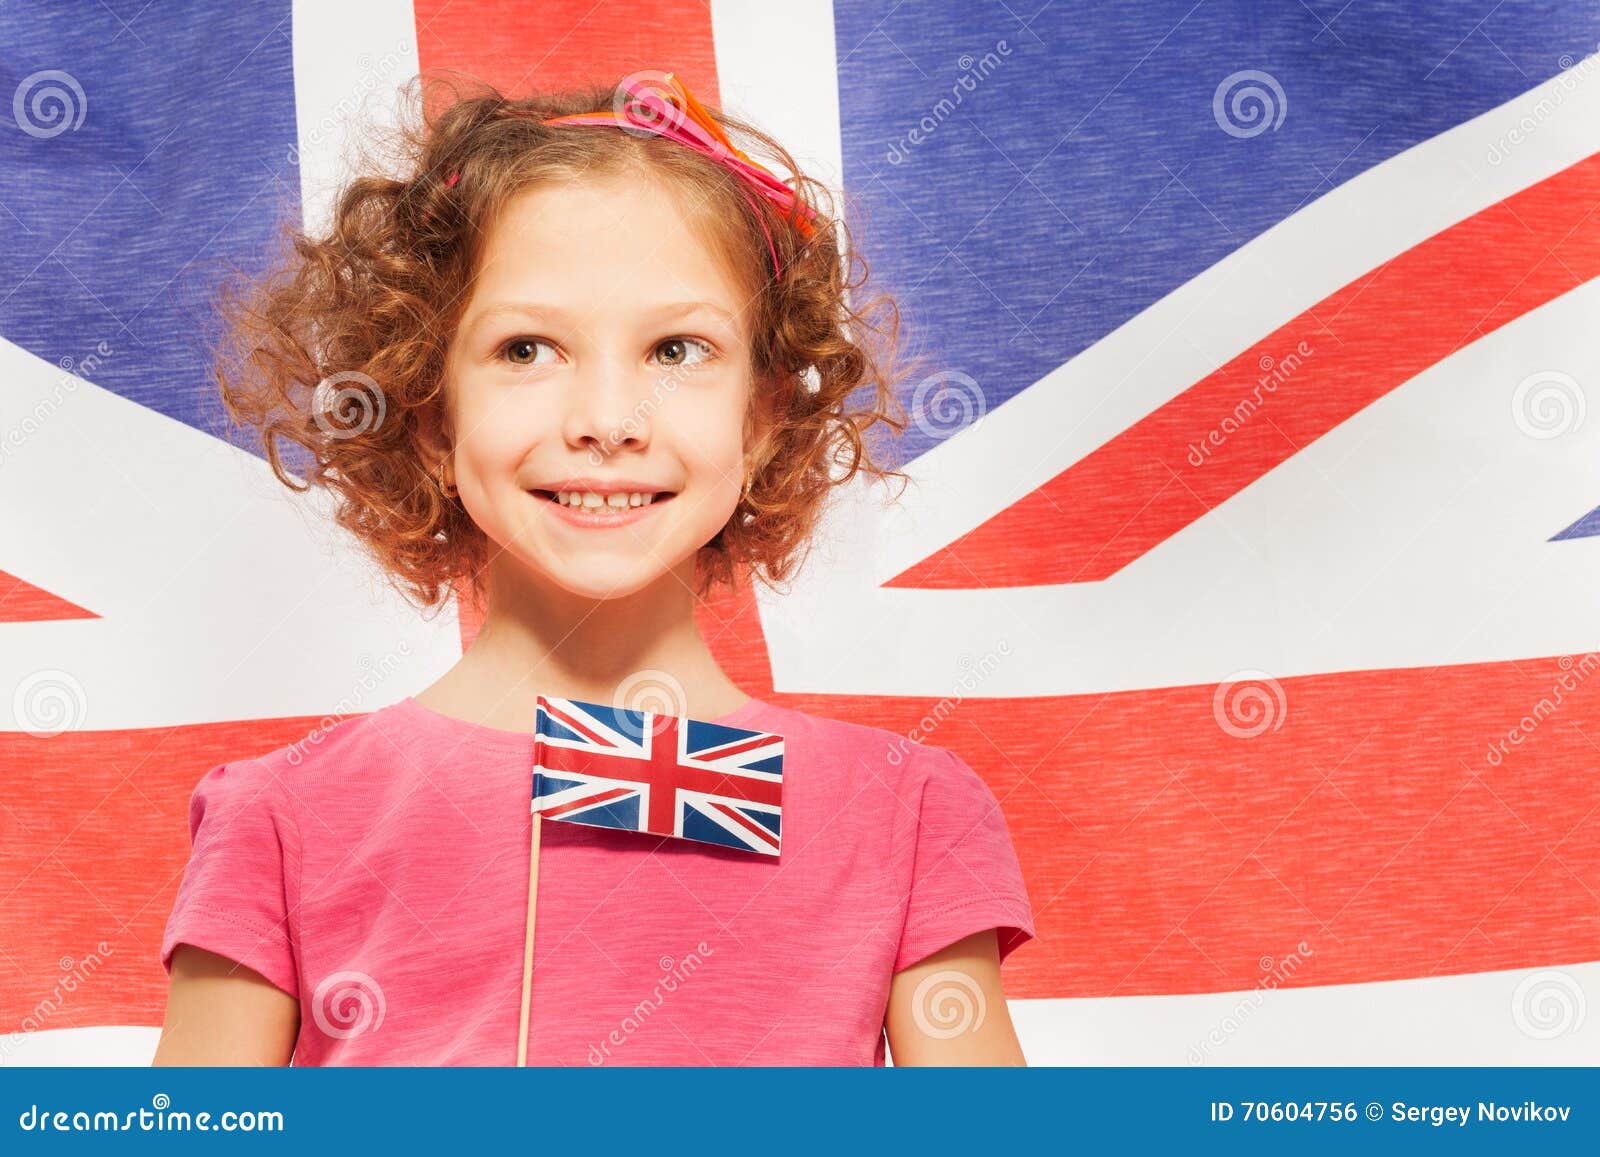 Девочка на английском написать. Девочки Великобритании. Девочка из Англии. Девочка с британским флагом. Ребенок с английским флагом.